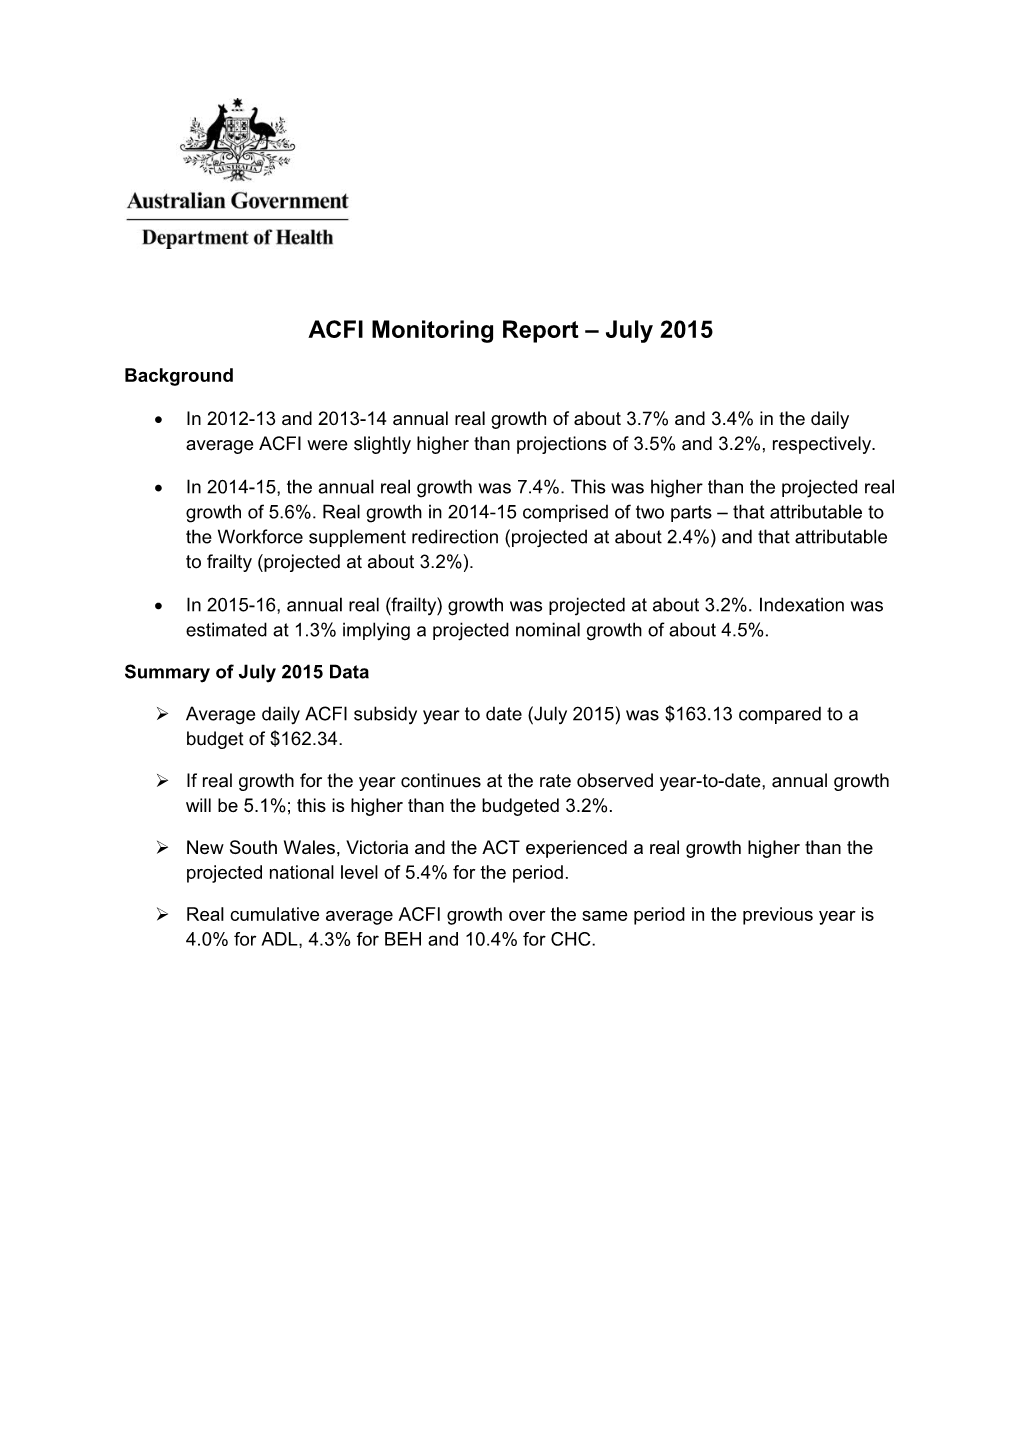 ACFI Monitoring Report July 2015